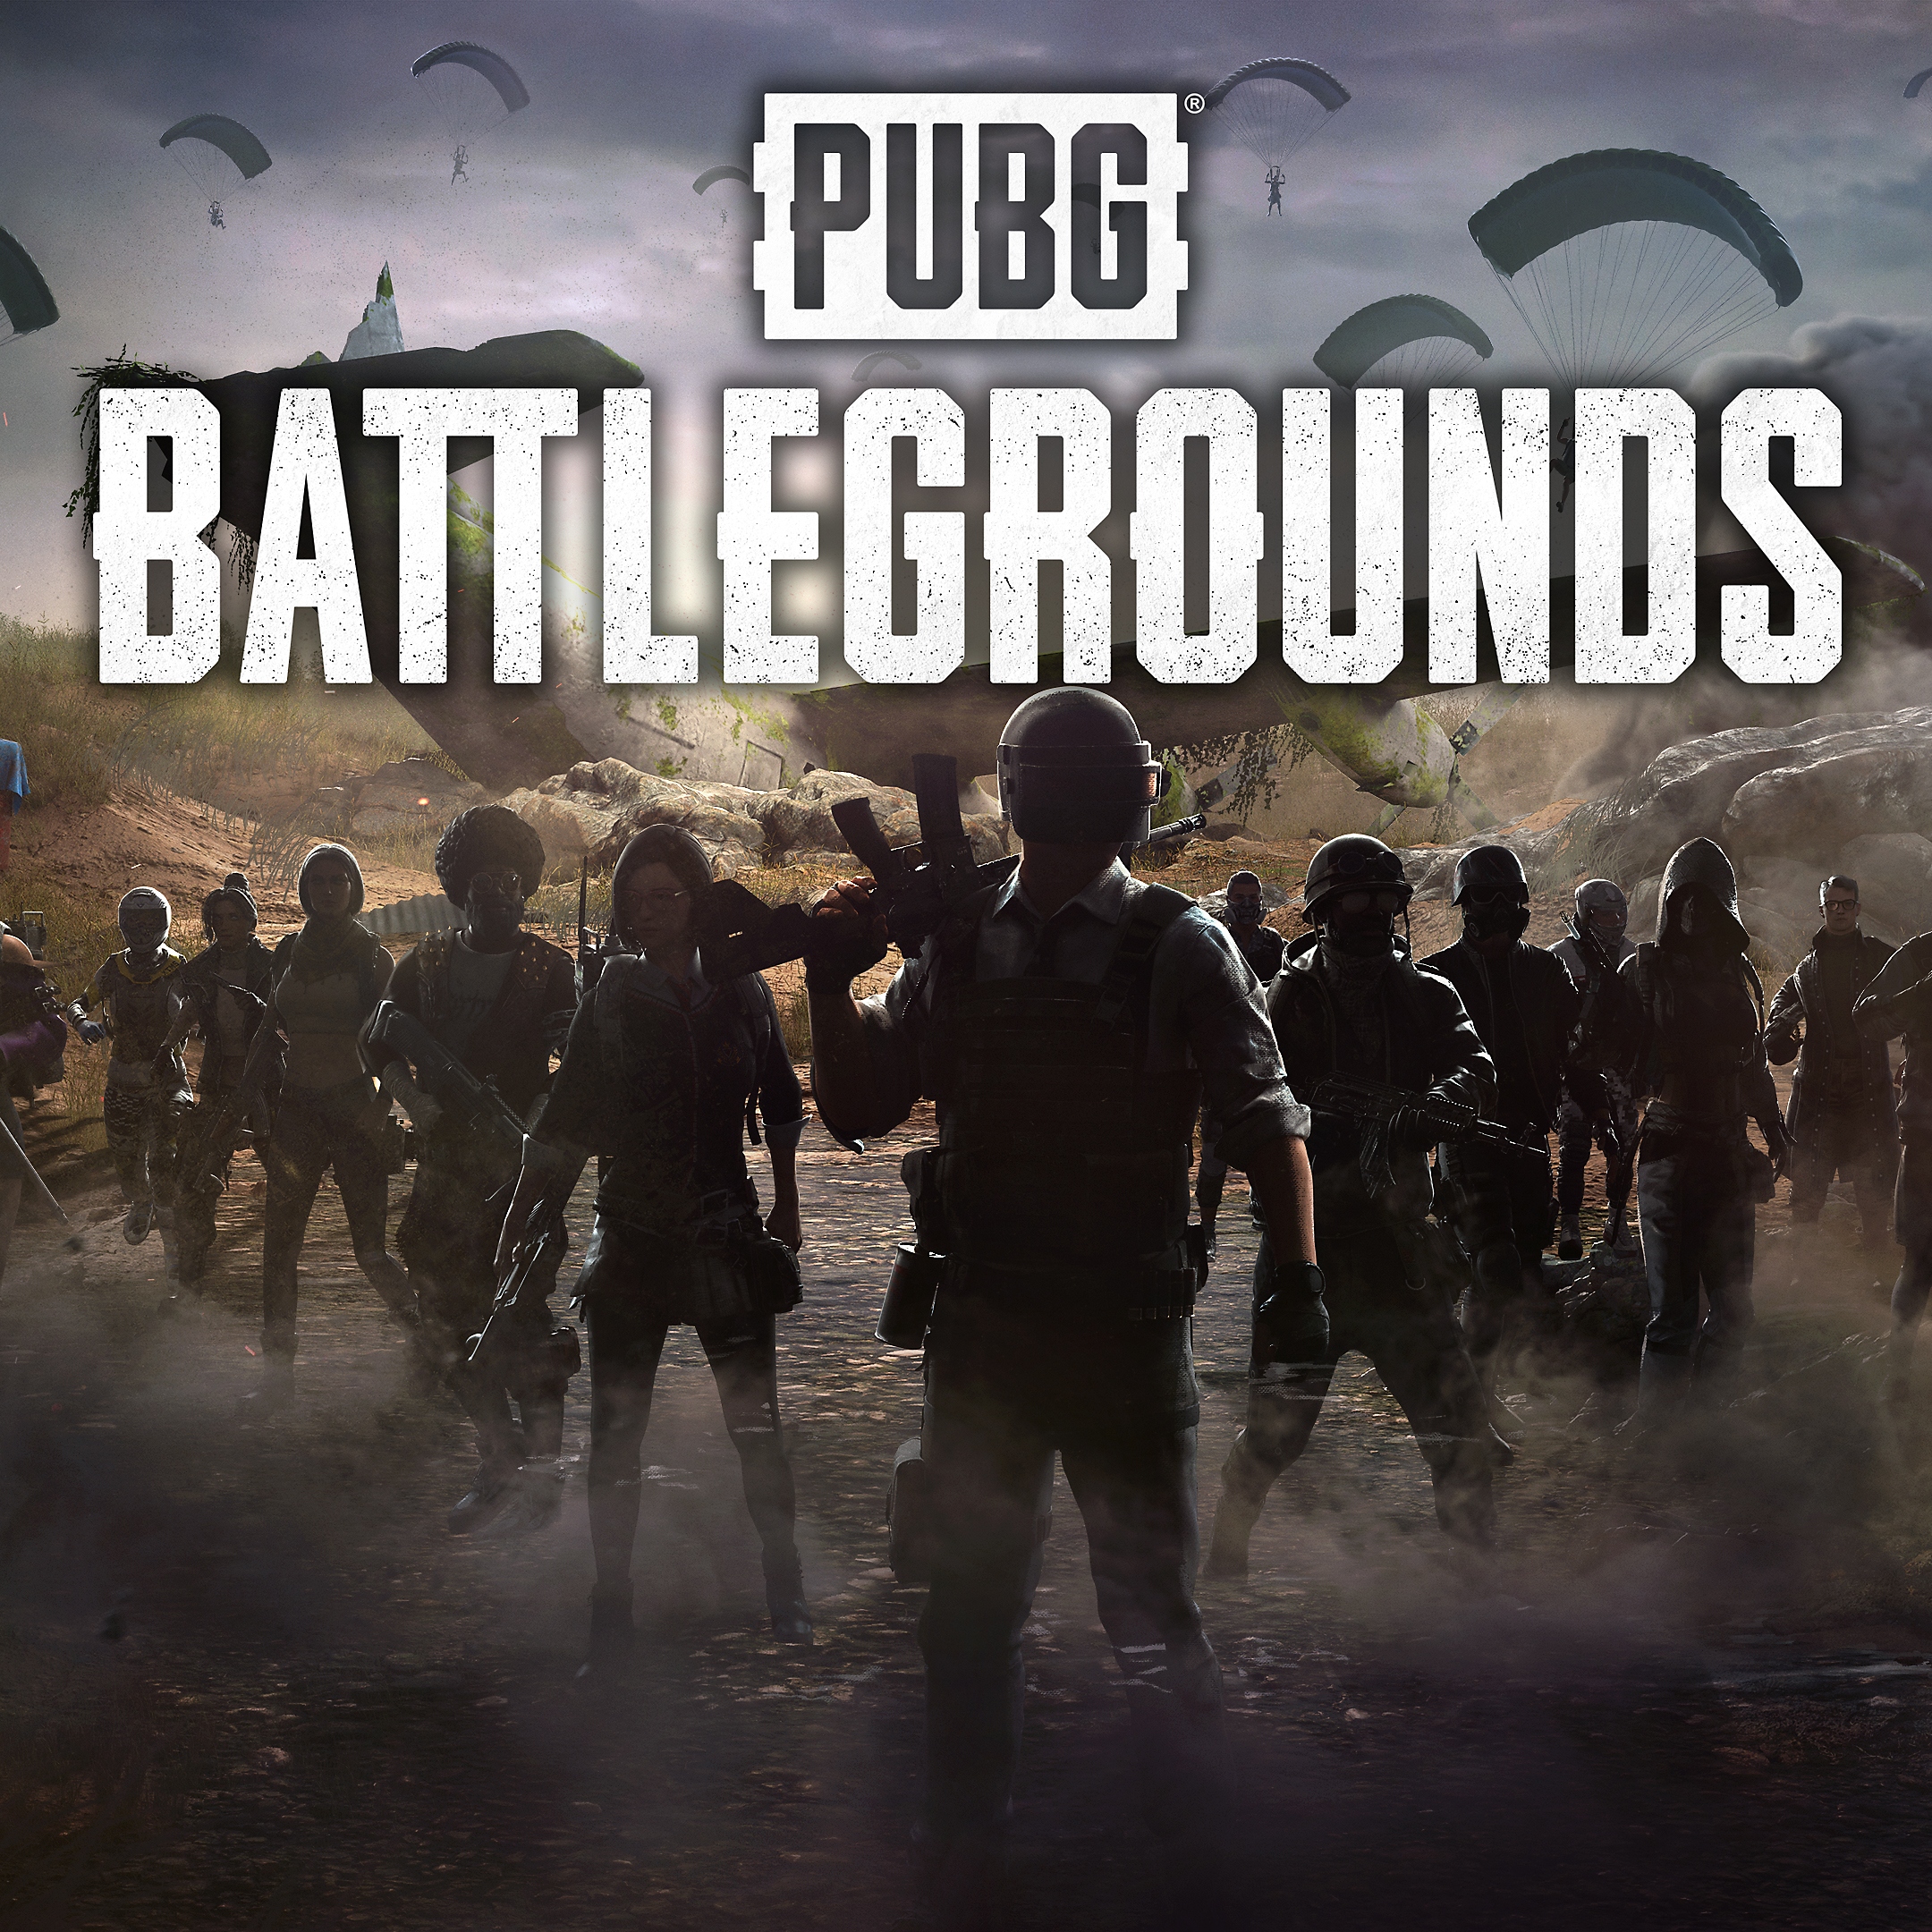 PUBG: Battlegrounds – изображение для магазина